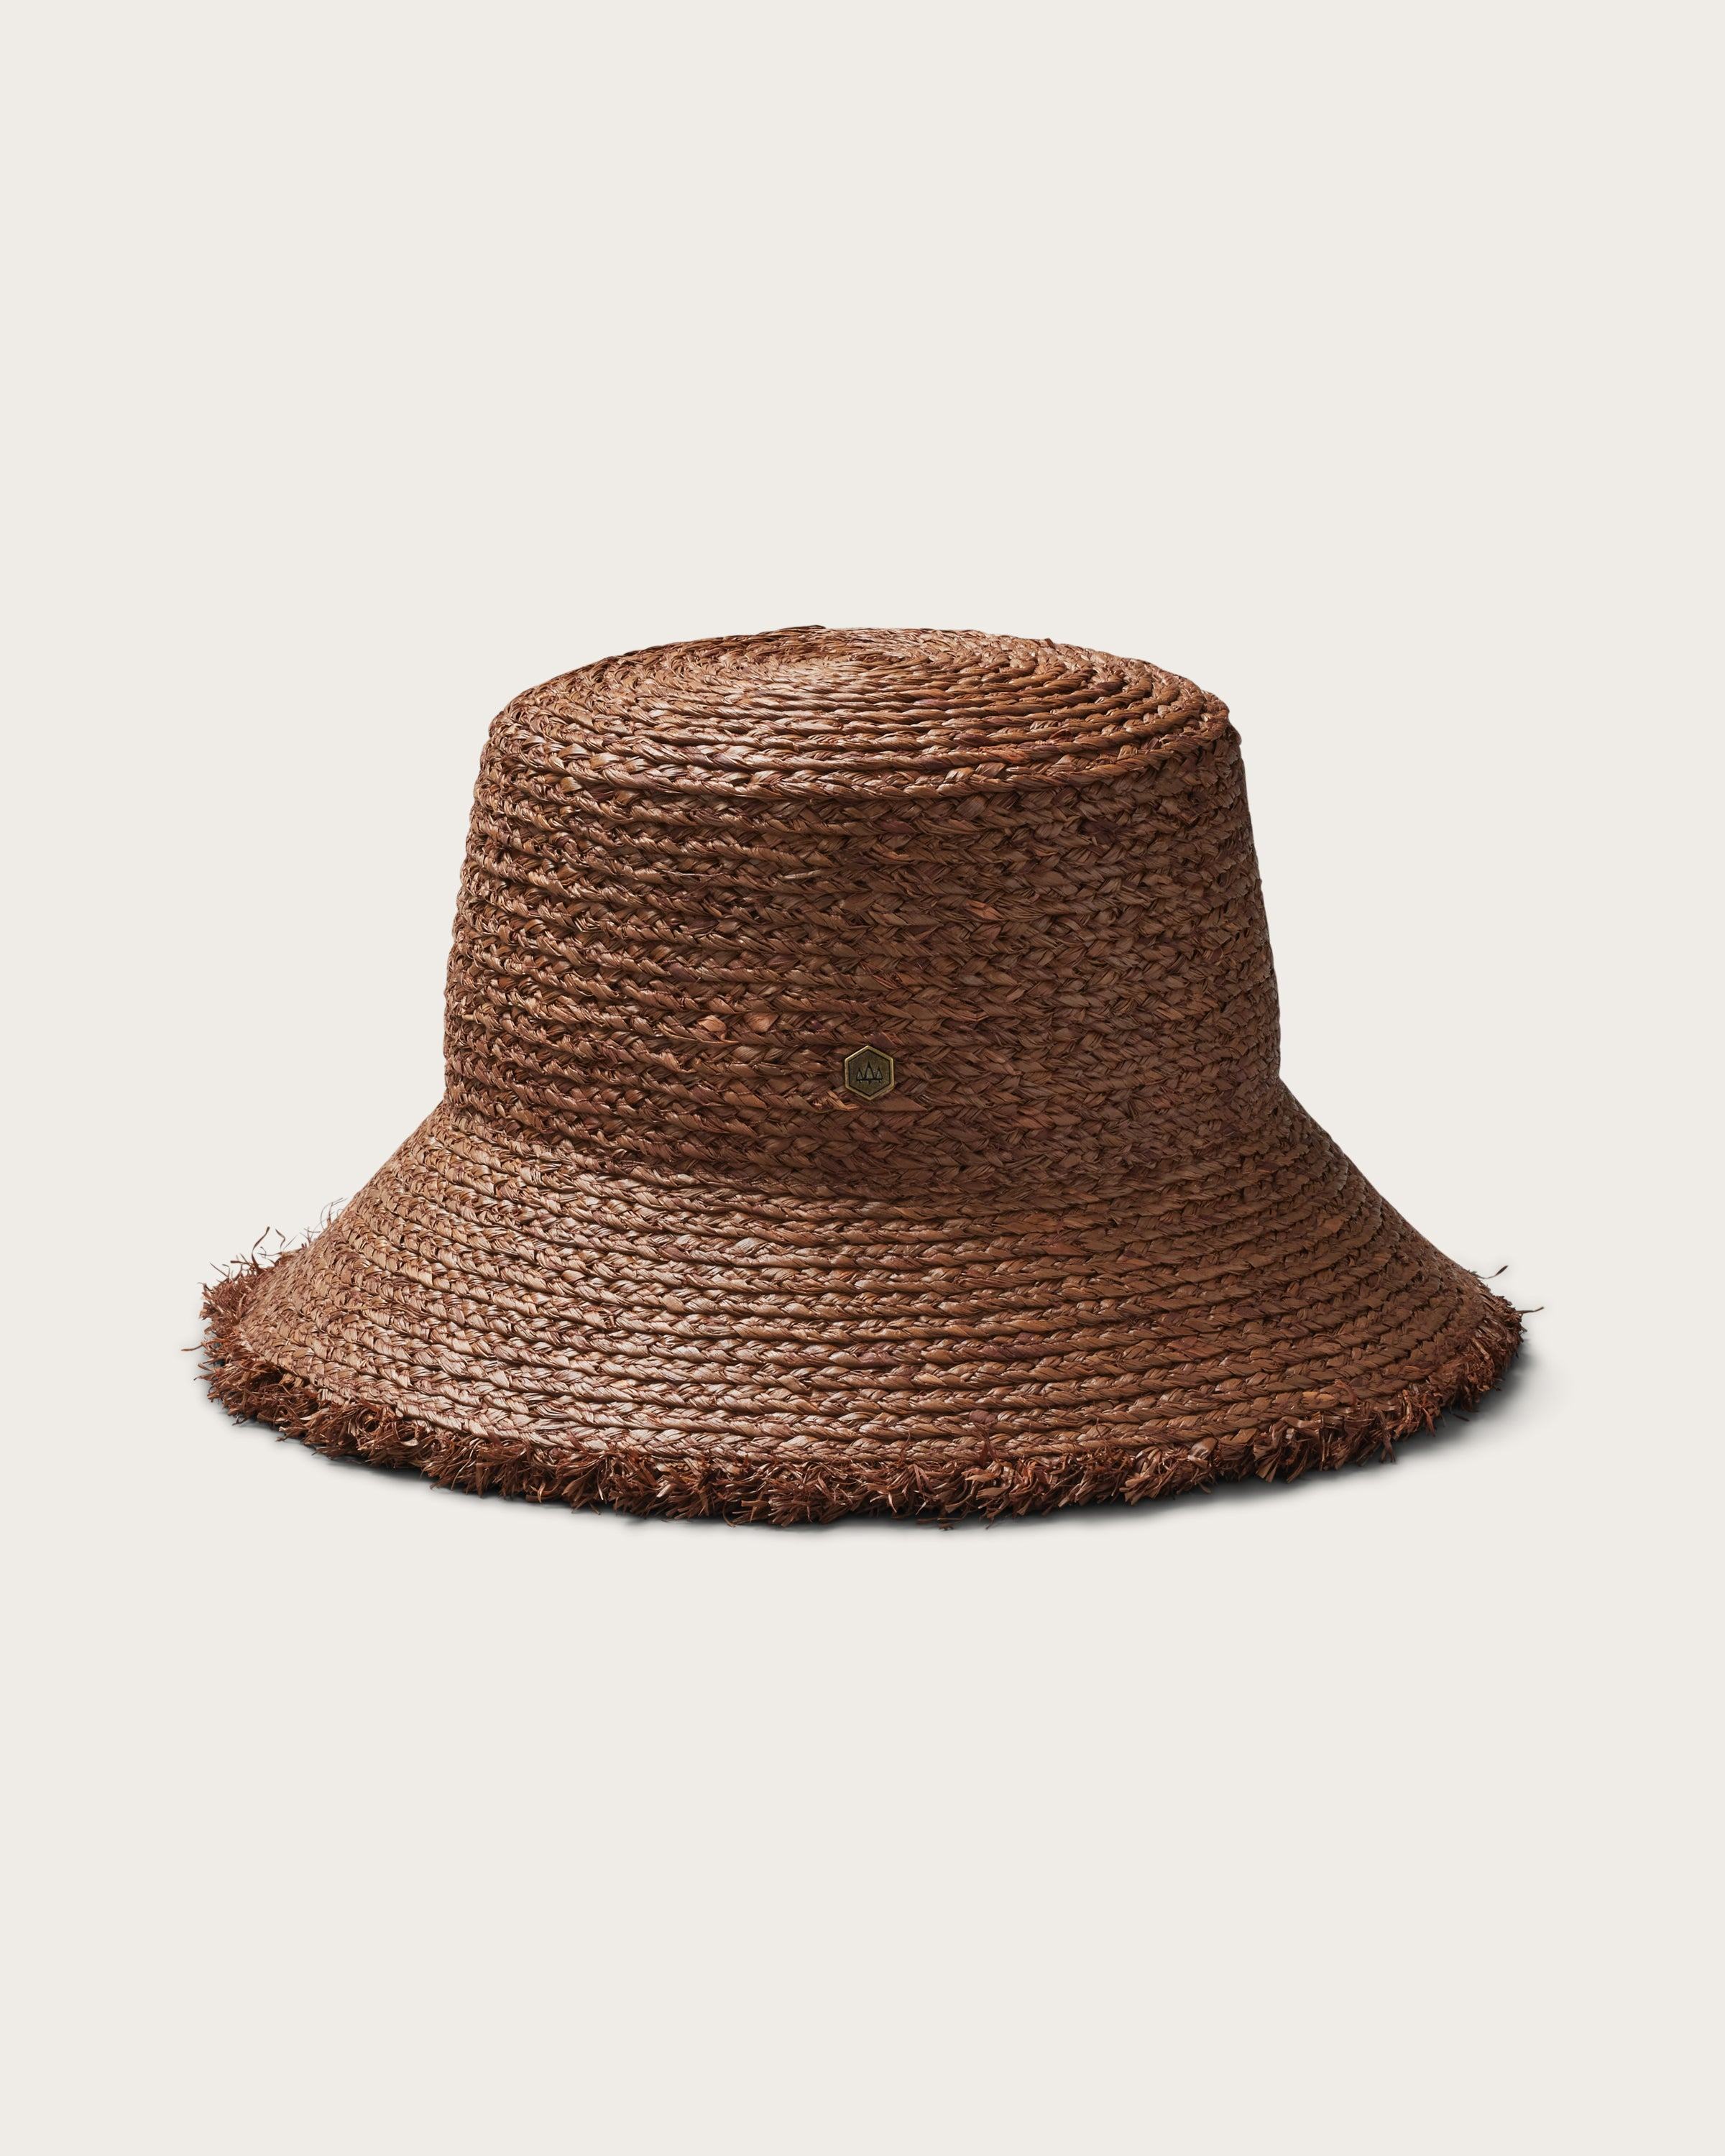 Hemlock Lenny Straw Bucket Hat in Mocha side profile